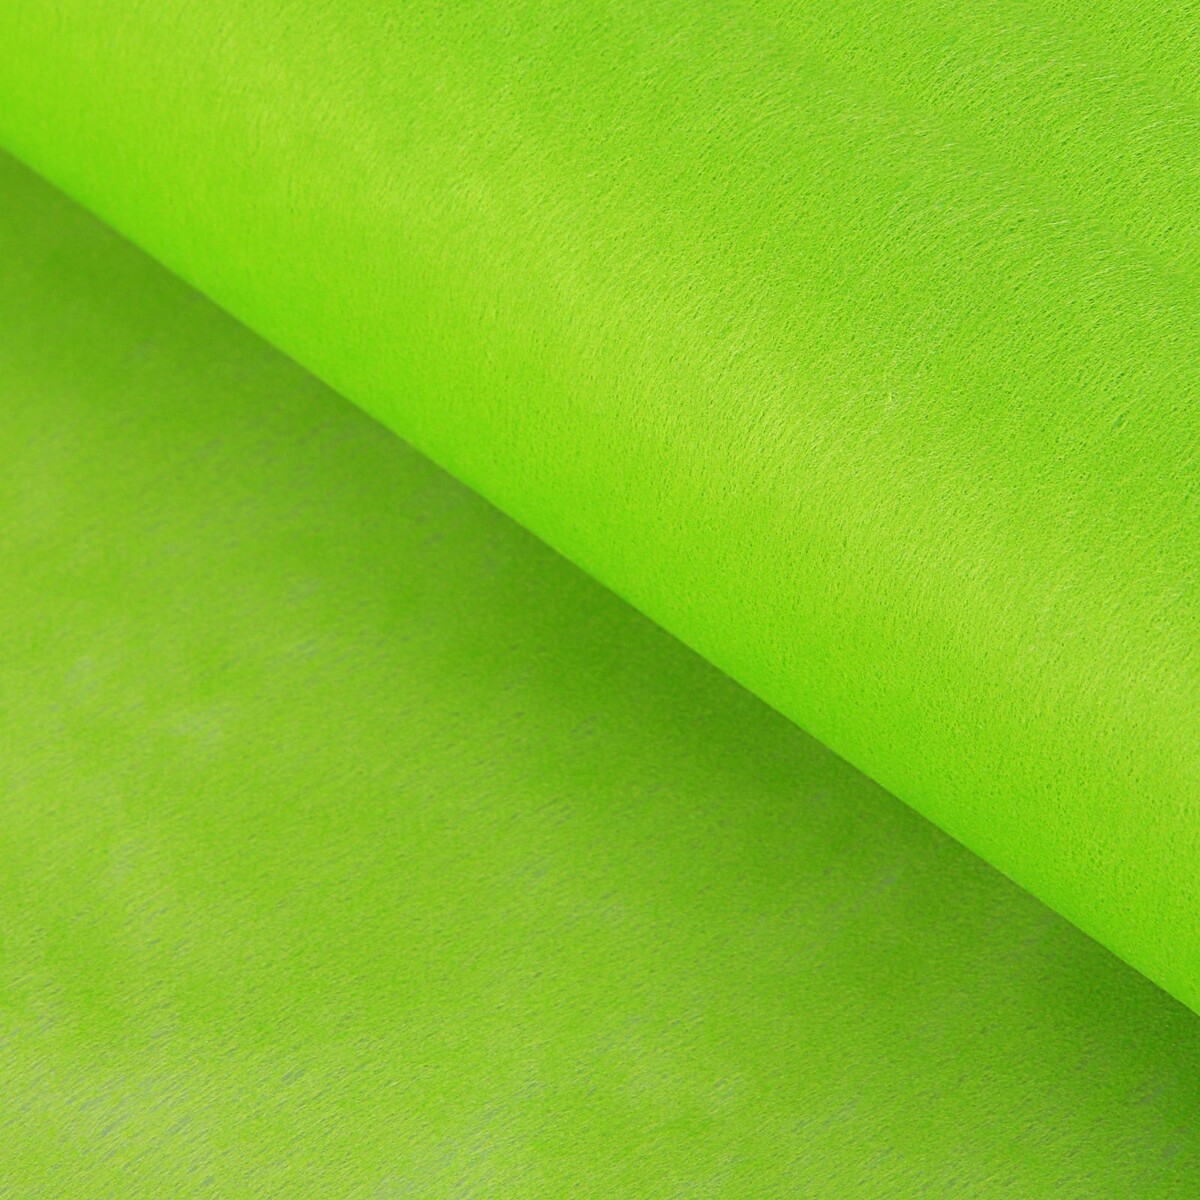 Фетр для упаковок и поделок, однотонный, салатовый, зеленый, двусторонний, рулон 1шт., 0,5 x 20 м мяч для художественной гимнастики lugger однотонный d 15 см зеленый с блестками